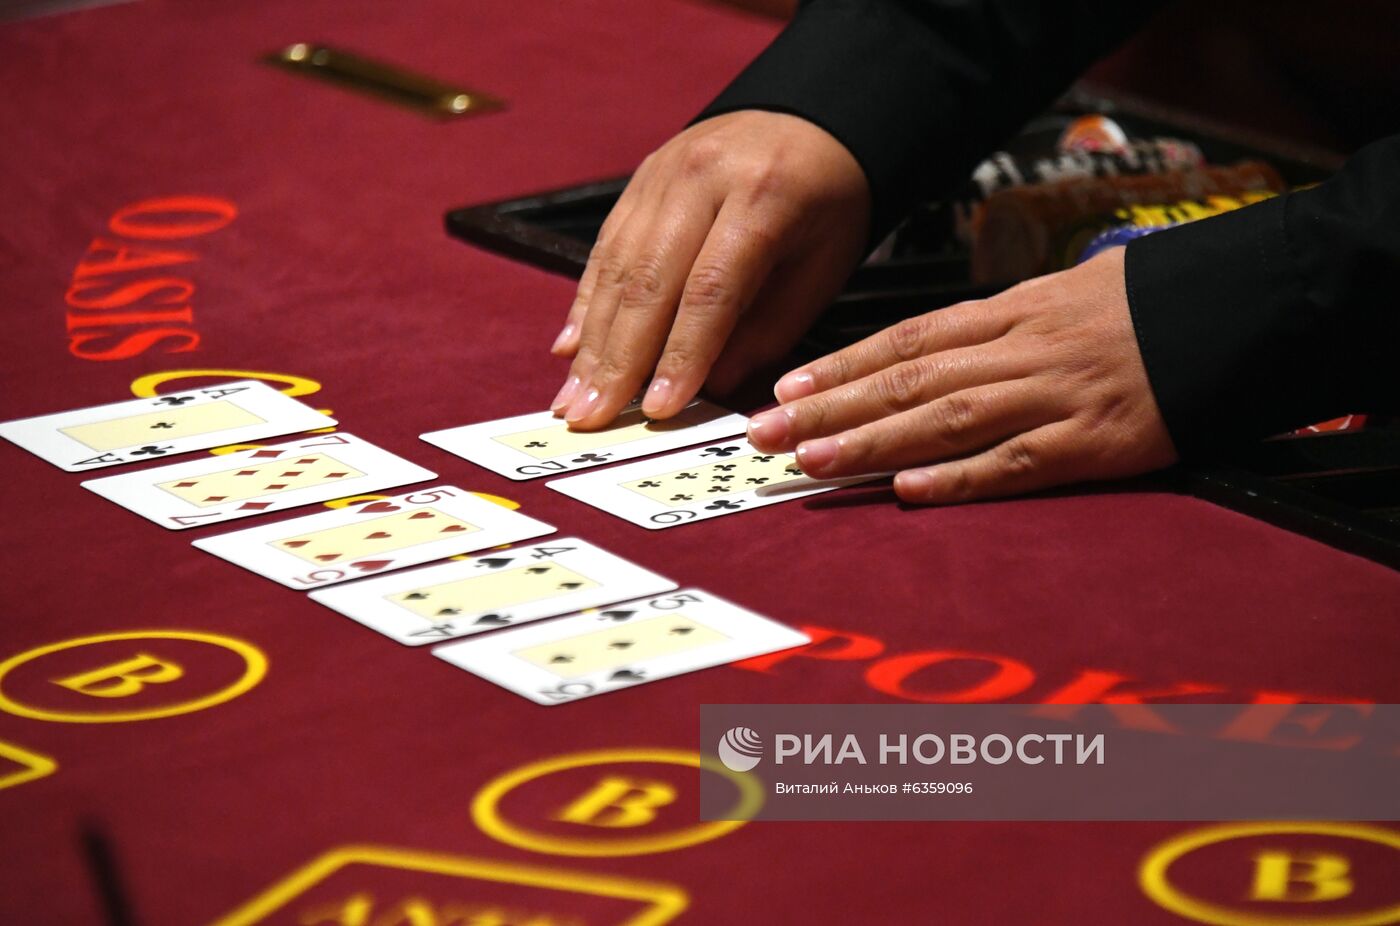 Открытие второго казино "Шамбала" во Владивостоке